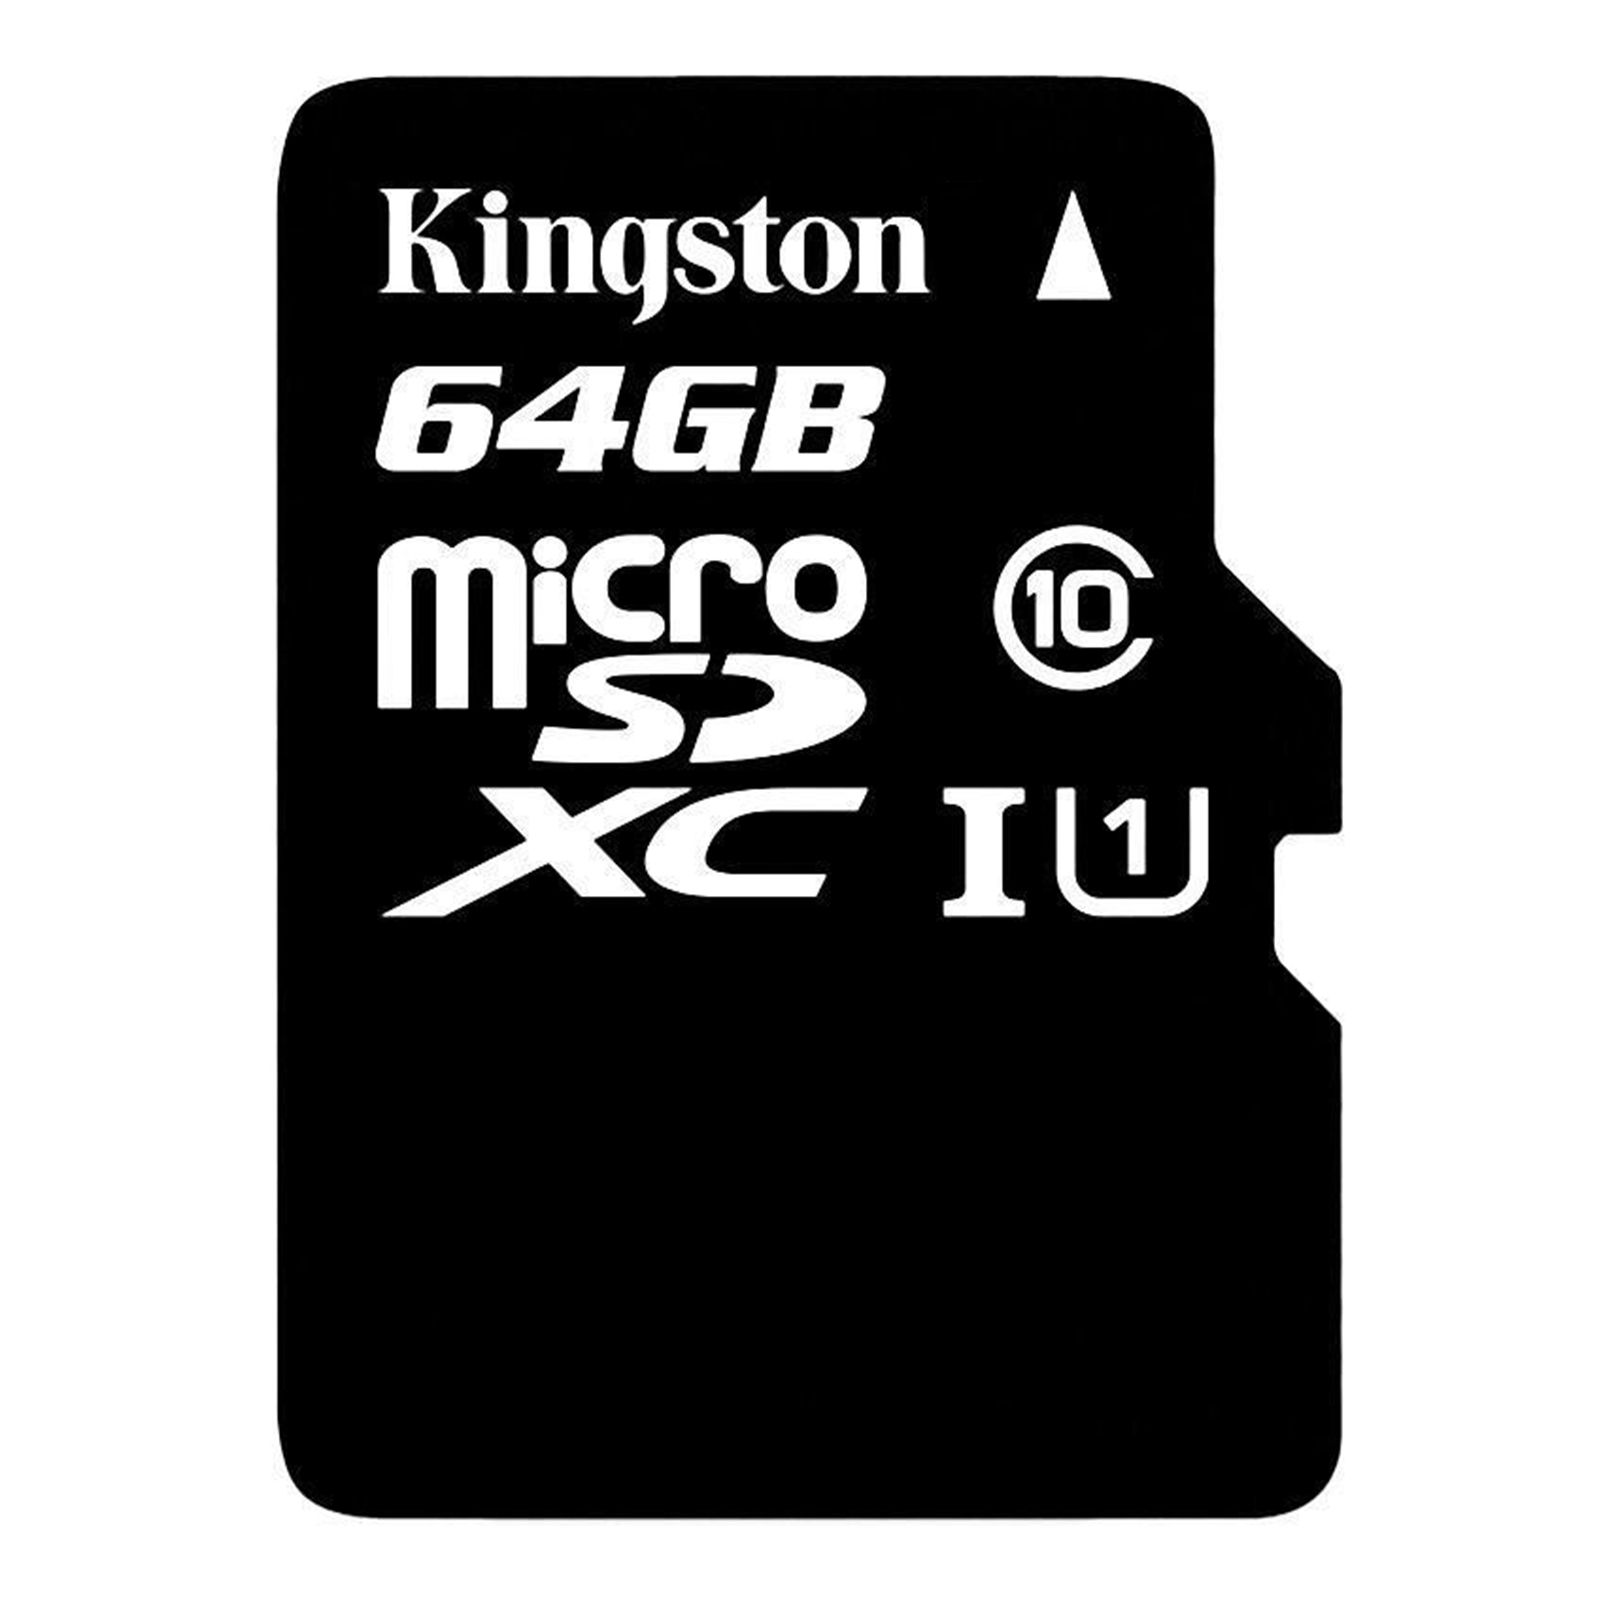 Купить микро сд 64. Карты памяти Kingston Micro 64gb. MICROSD Kingston 64gb. Кингстон микро СД 64 ГБ. Kingston SD карта 64 ГБ.